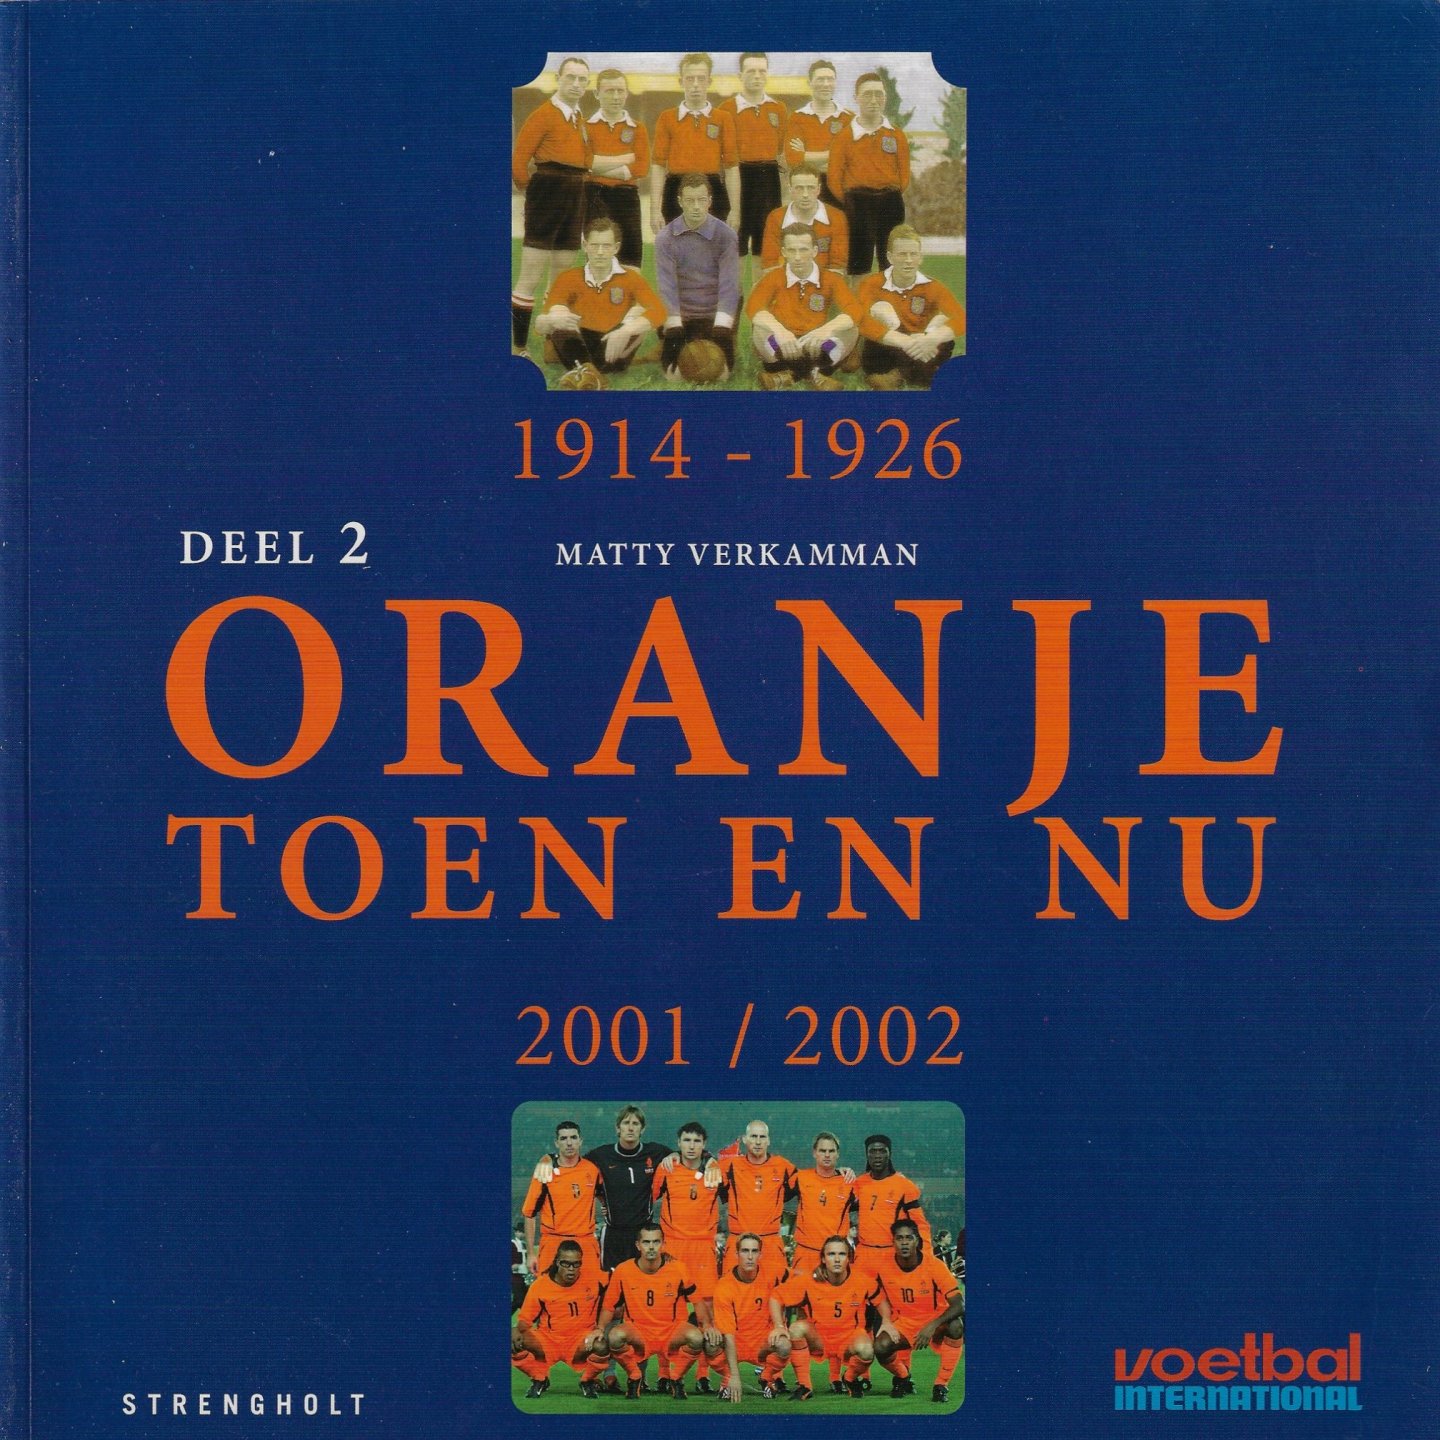 Verkamman, Matty - 1914 - 1926 Oranje Toen en Nu Deel 2  2001 / 2002